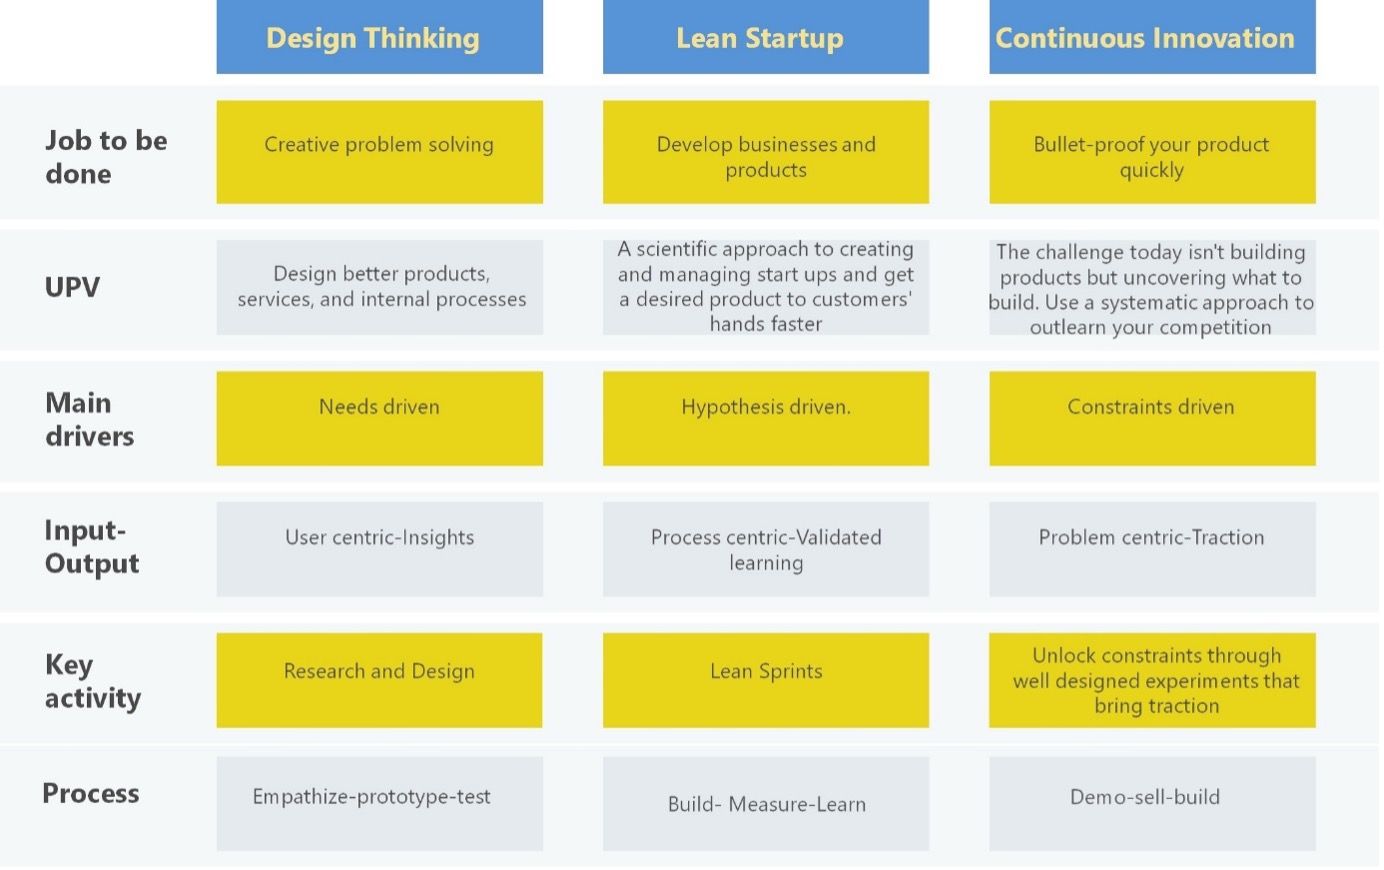 Matrise oppsett som sammenligner forskjellige tilnærminger mellom. Design Thinking, Lean Startup og Kontinuerlig Innovajon